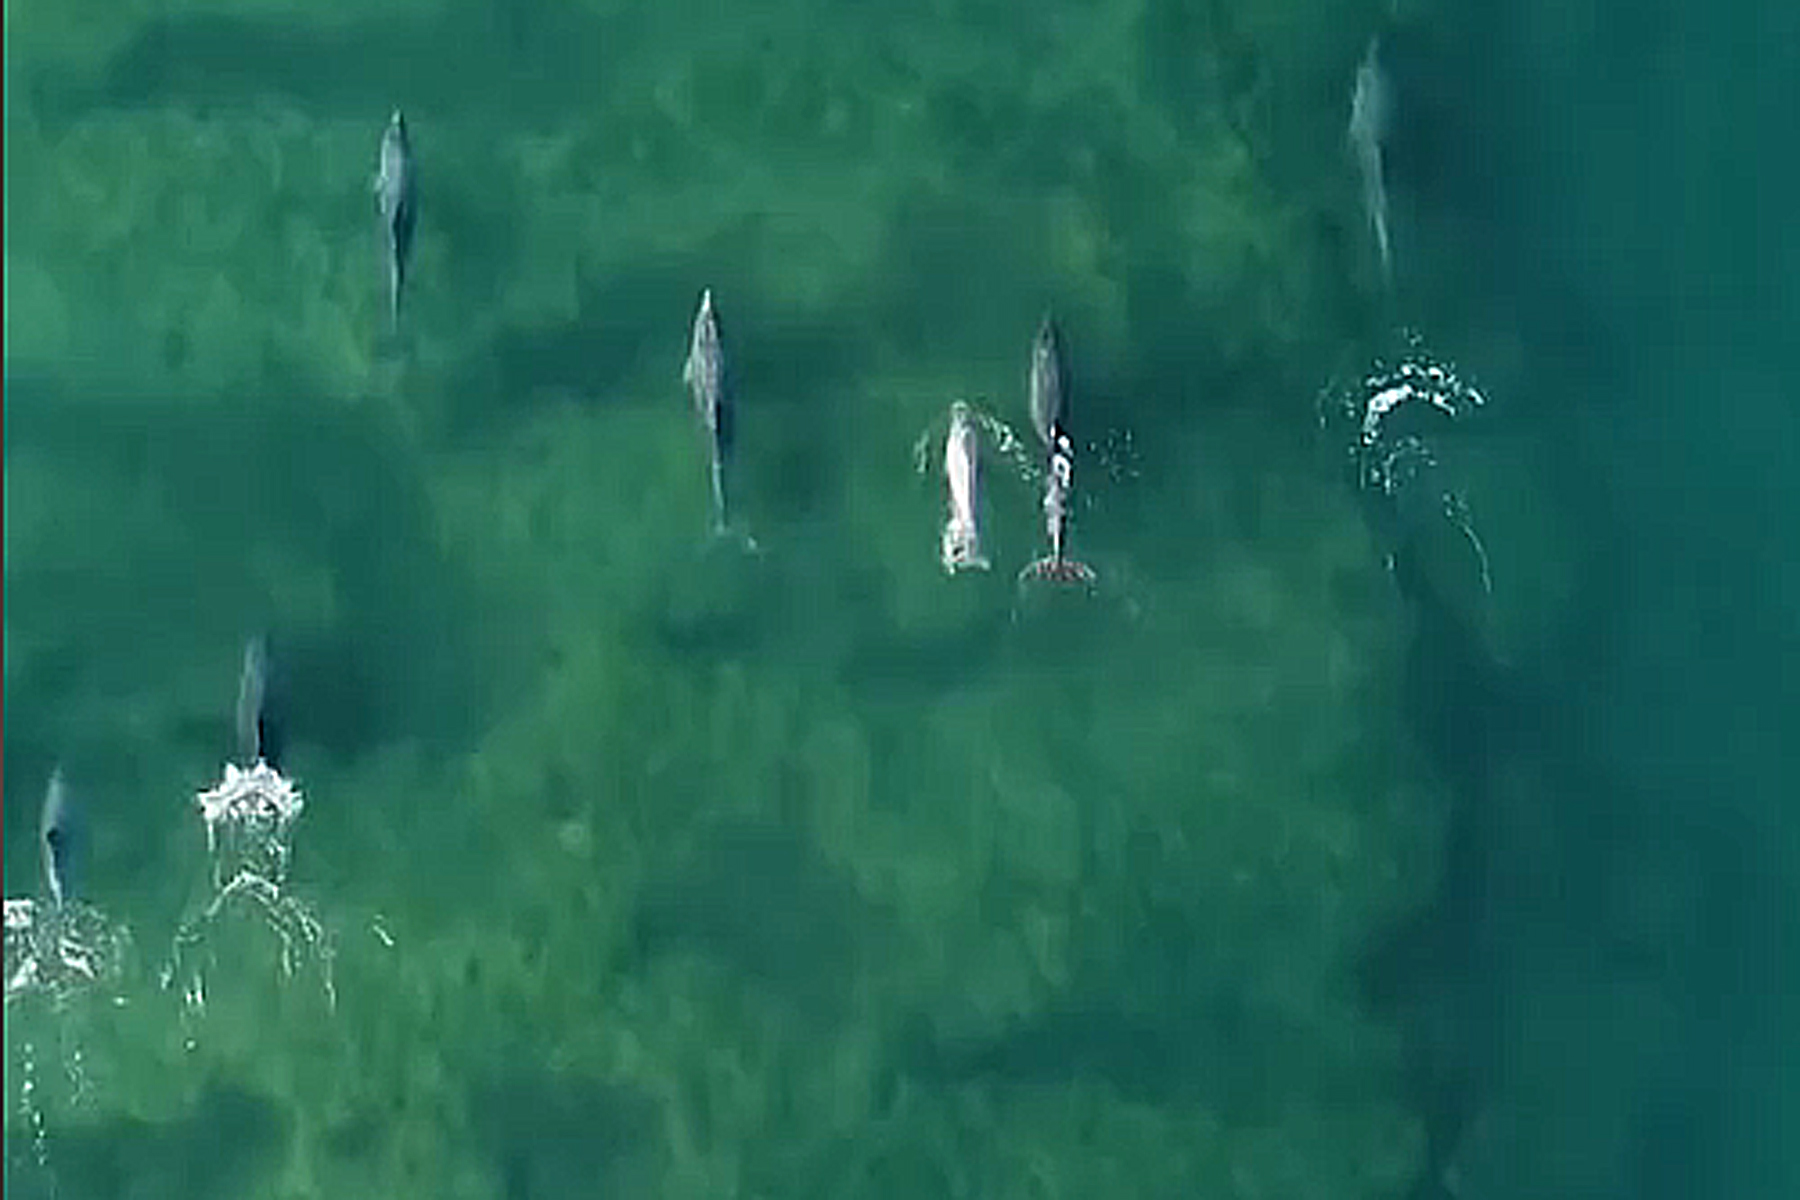 La colonia de delfines "nariz de botella" que tiene su hábitat en Las Grutas fue capturada por el drone de 'Lolo', que tomó escenas fantásticas / Captura de Video